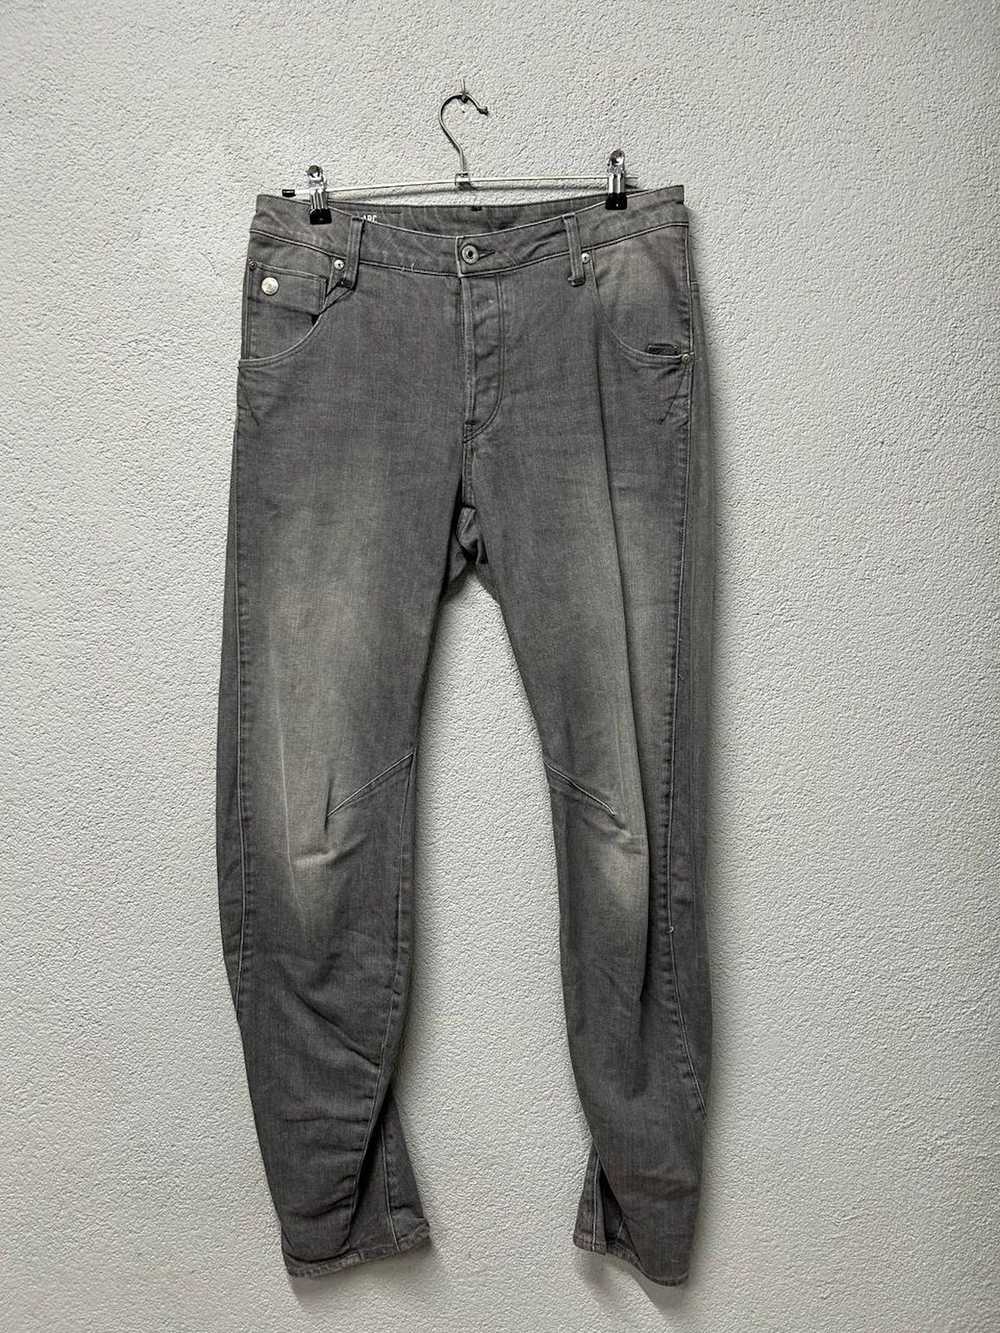 Gstar G Star Raw ARC 3d jeans mens W 30 L 34 - image 1